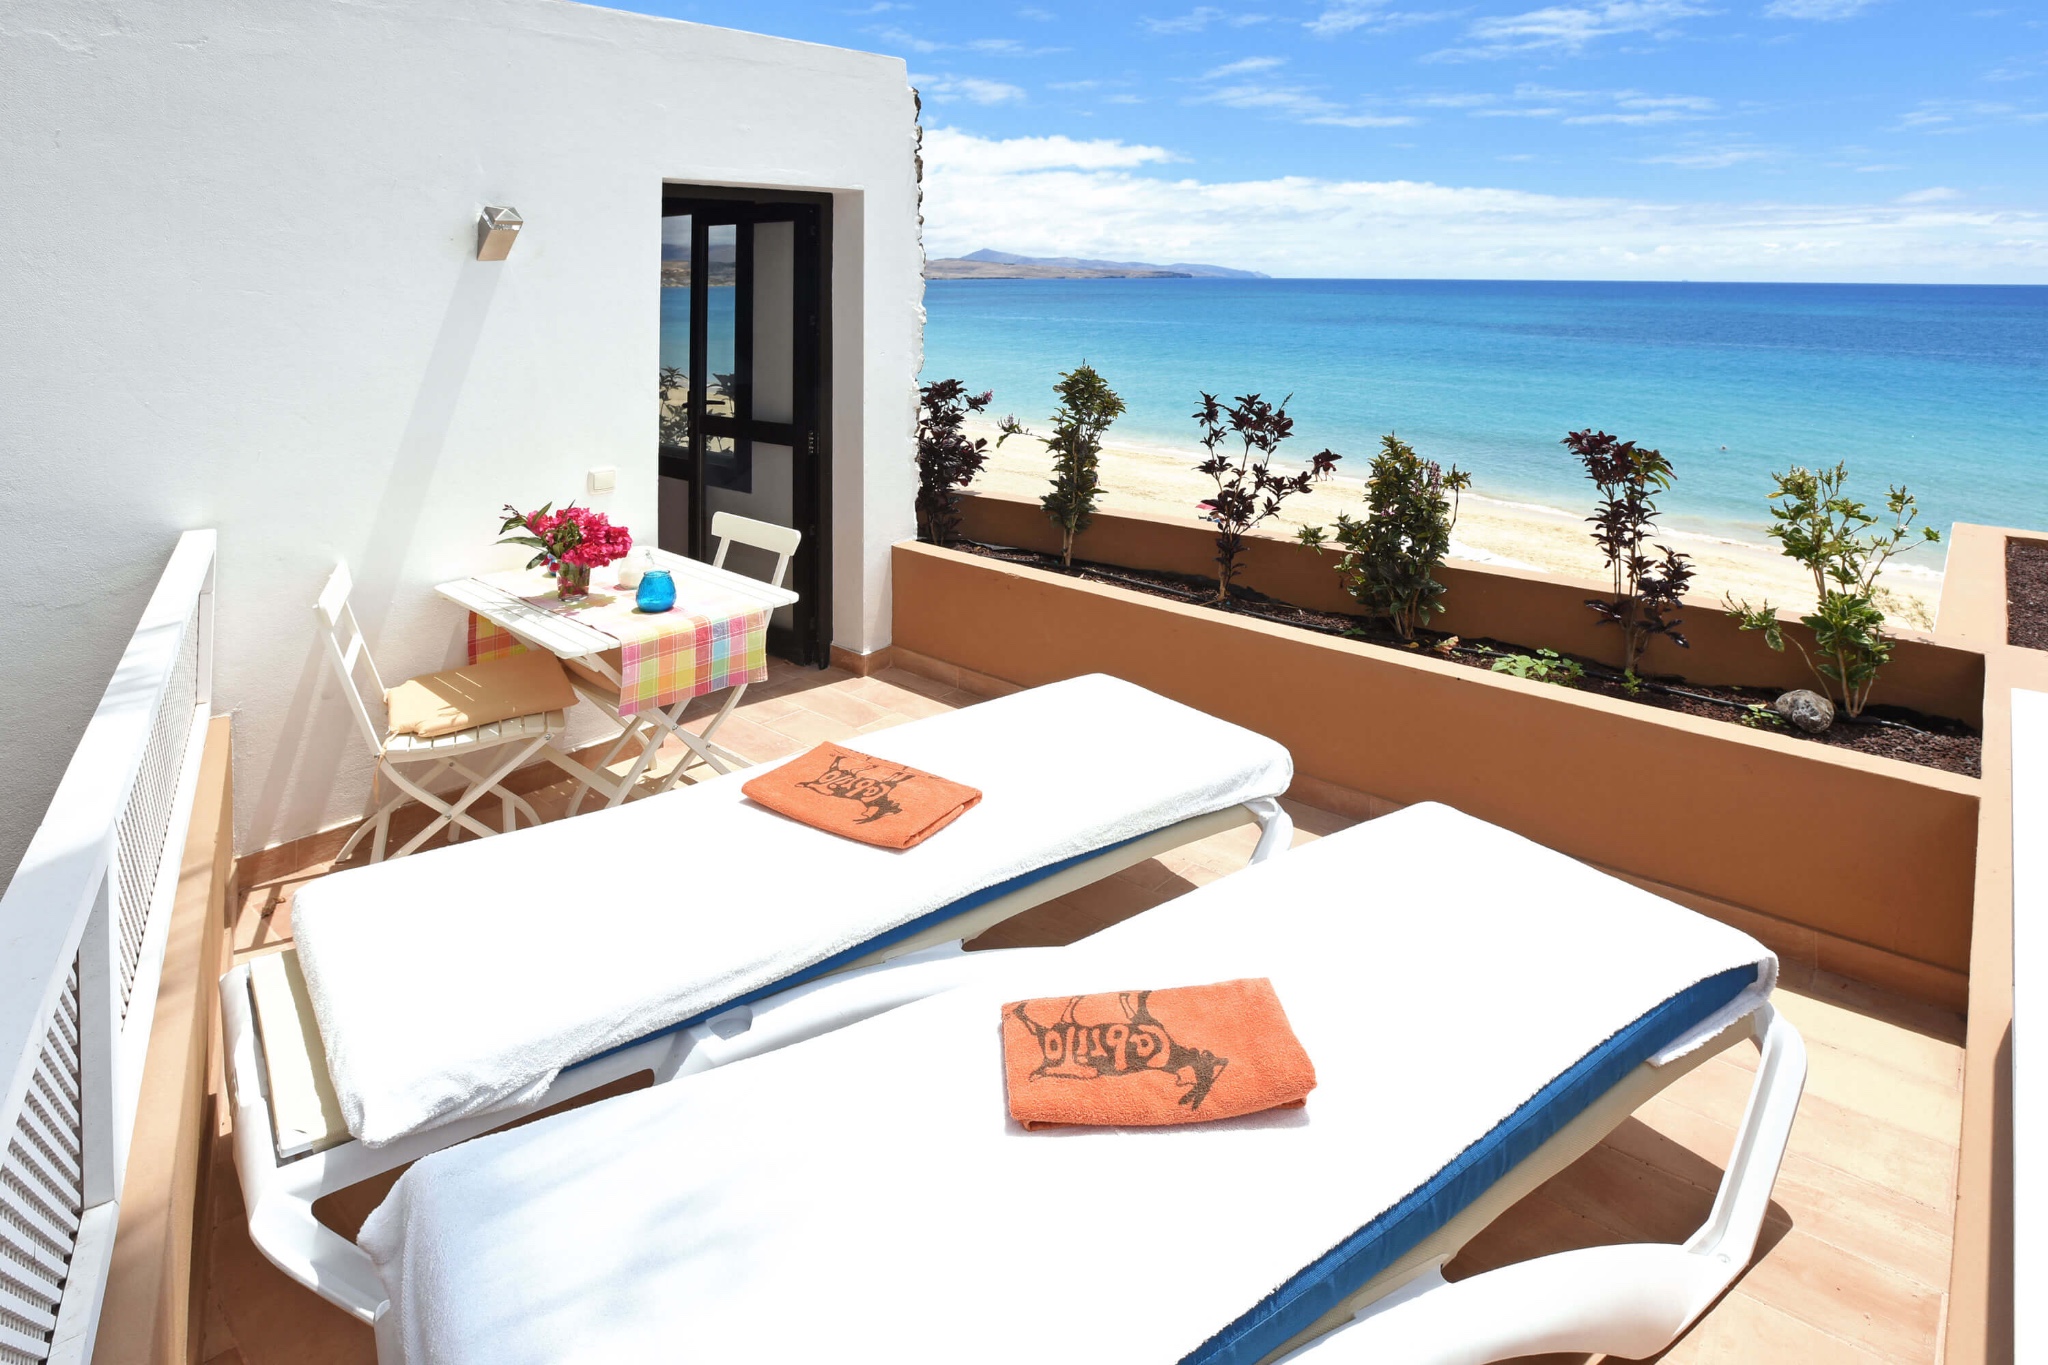 Den moderne sommerhus til 2 personer ligger på stranden i Costa Calma med fantastisk havudsigt